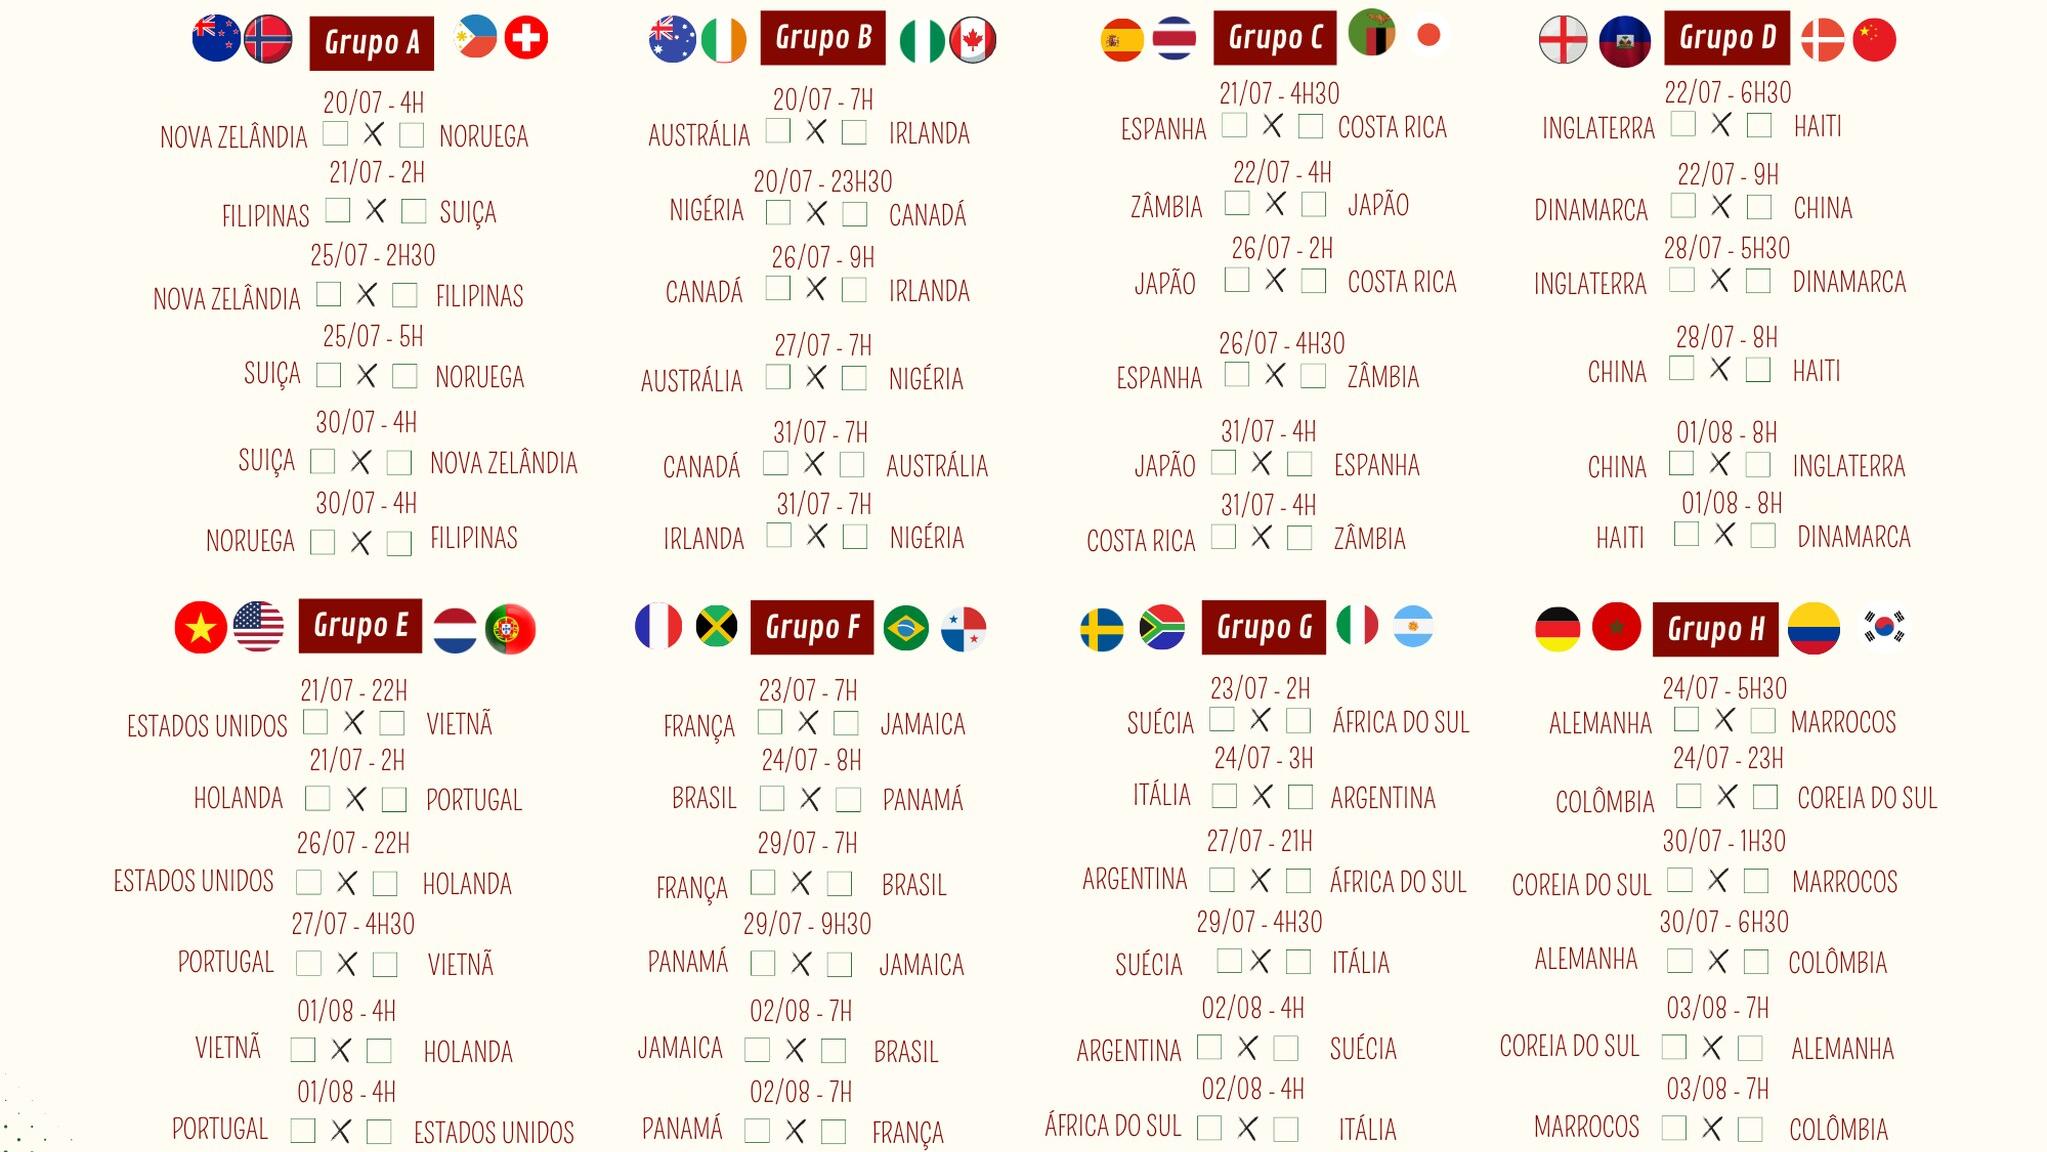 GRUPO F, do Brasil na Copa do Mundo Feminina 2023: tabela, classificação,  datas e horários dos jogos - Lance!